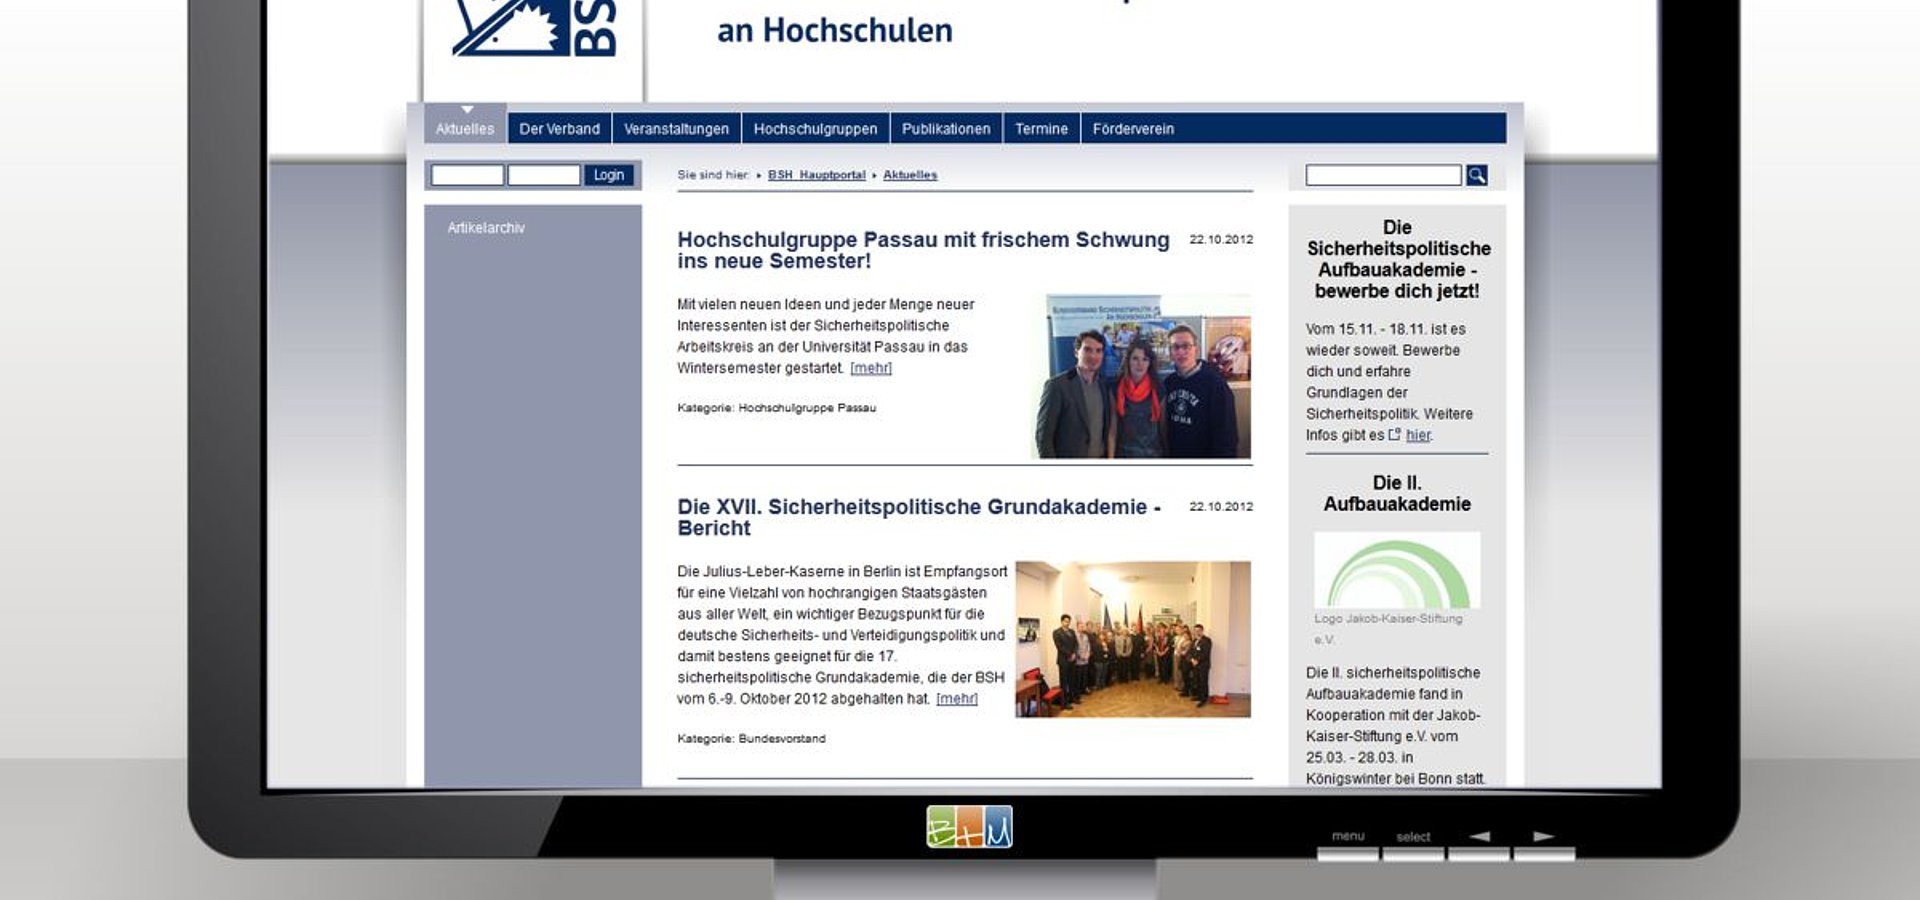 Webdesign: Webportal für sicherheitspolitik.de / 2011